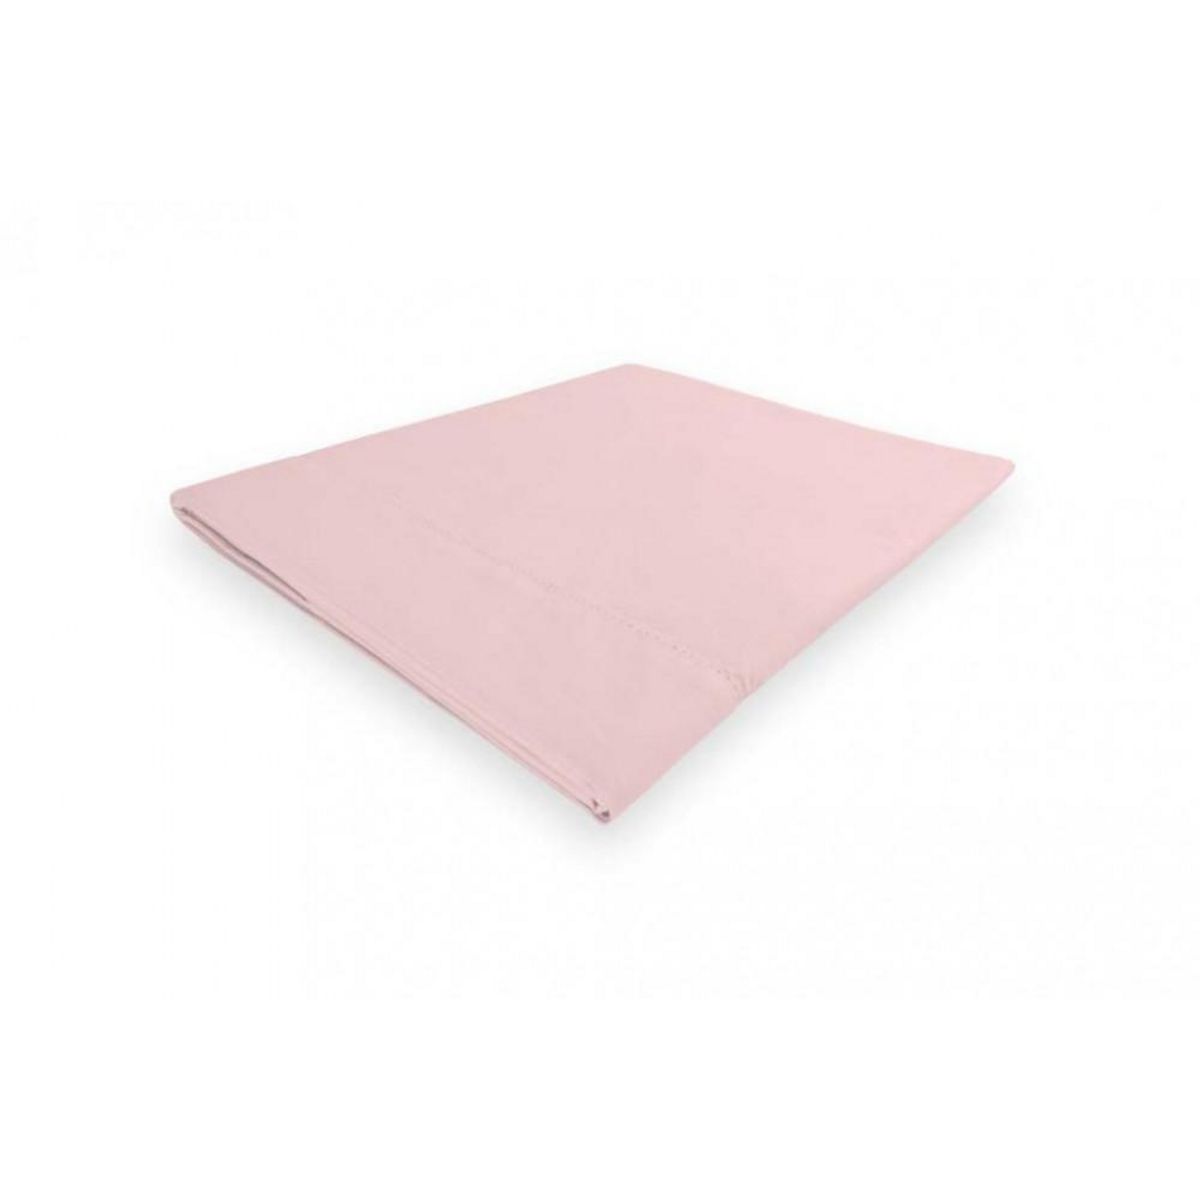 Camille Drap plat en coton percale 240x300 cm CAMILLE rose, par songe de camille